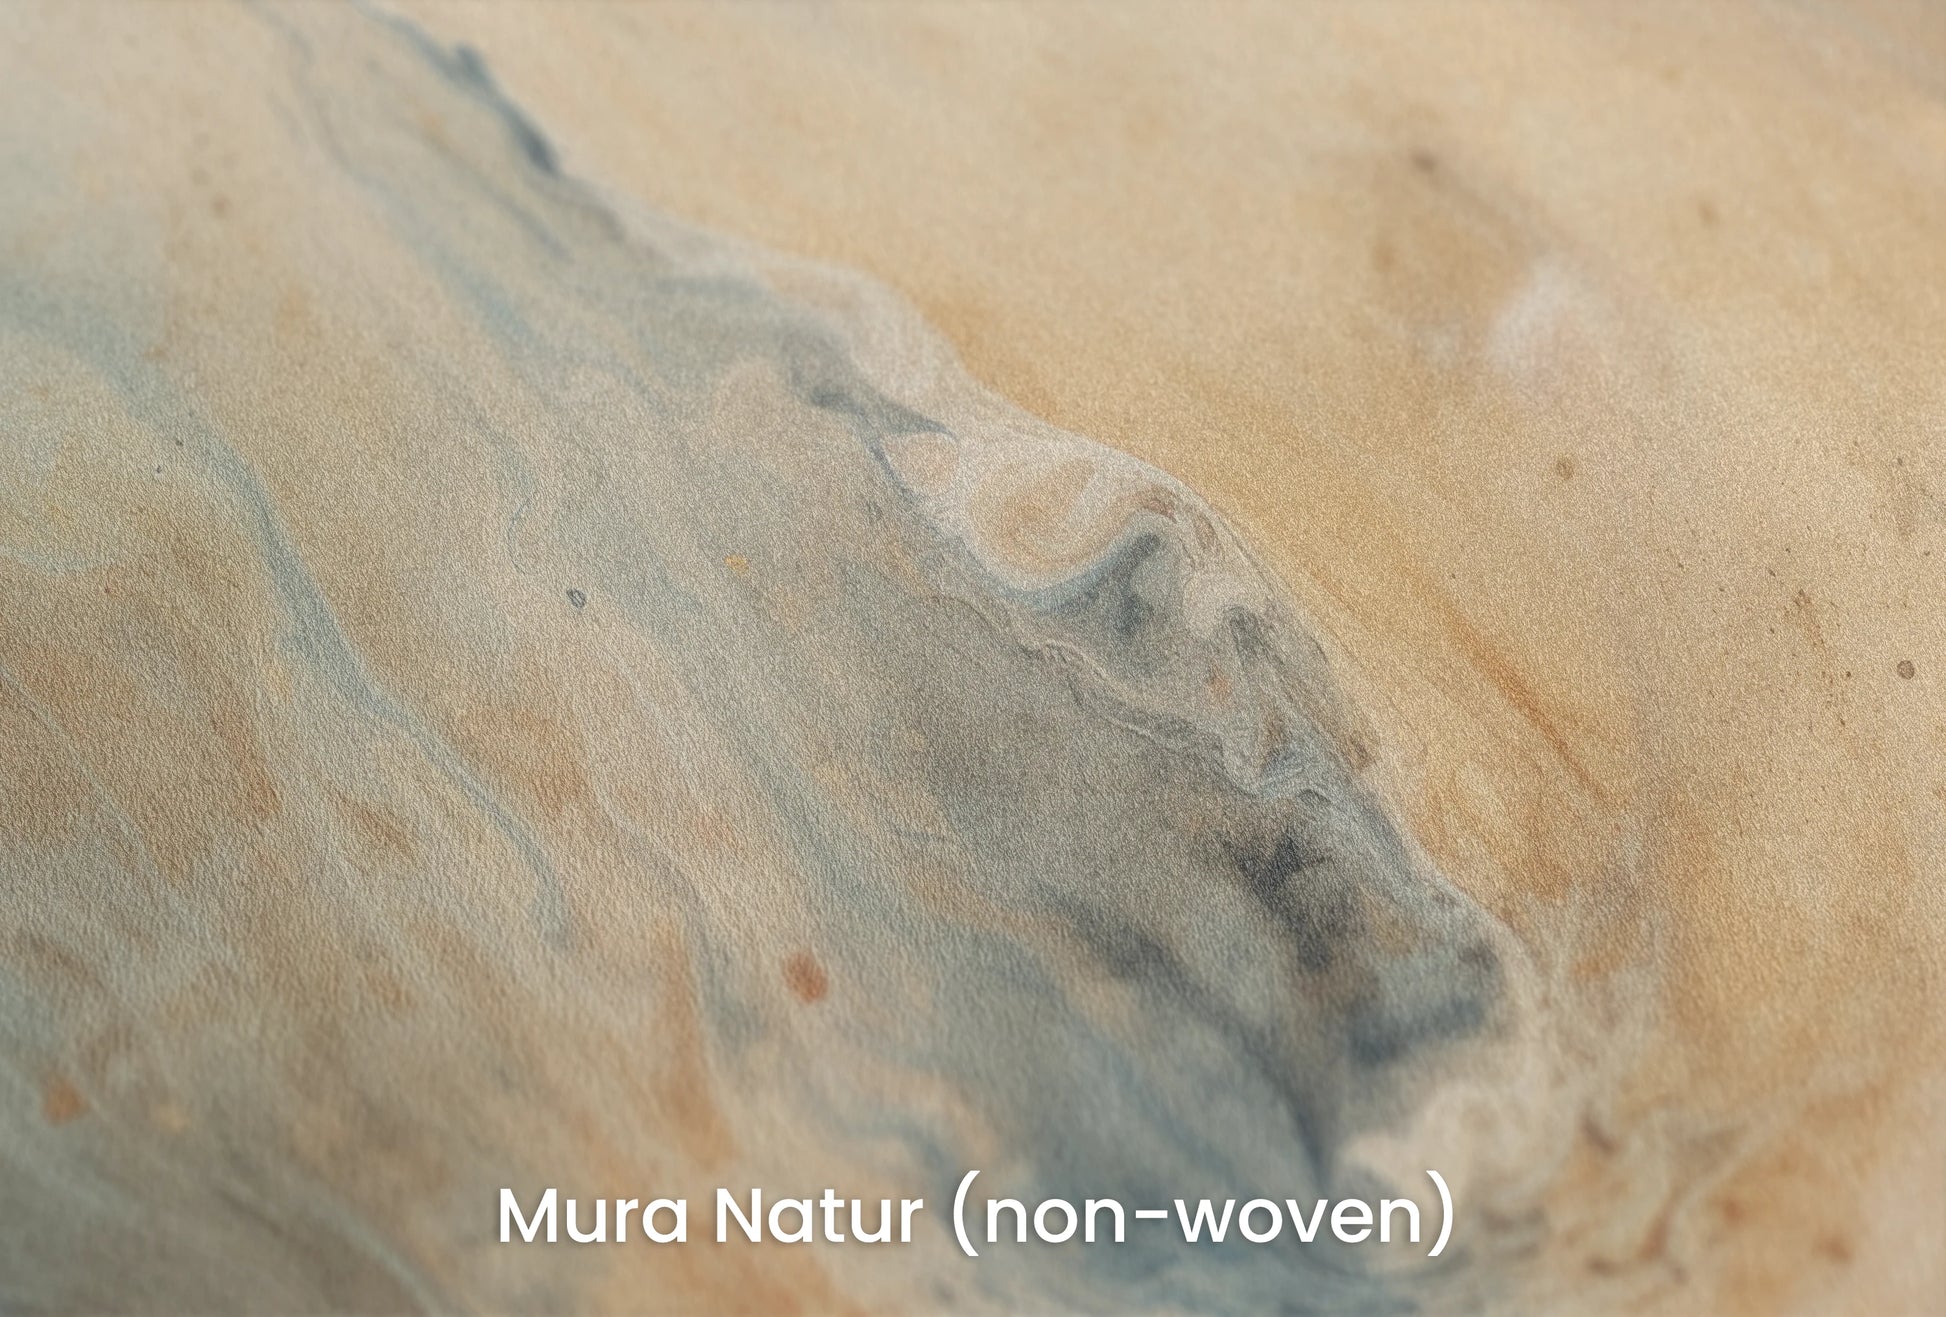 Zbliżenie na artystyczną fototapetę o nazwie Jupiter's Storm #2 na podłożu Mura Natur (non-woven) - naturalne i ekologiczne podłoże.